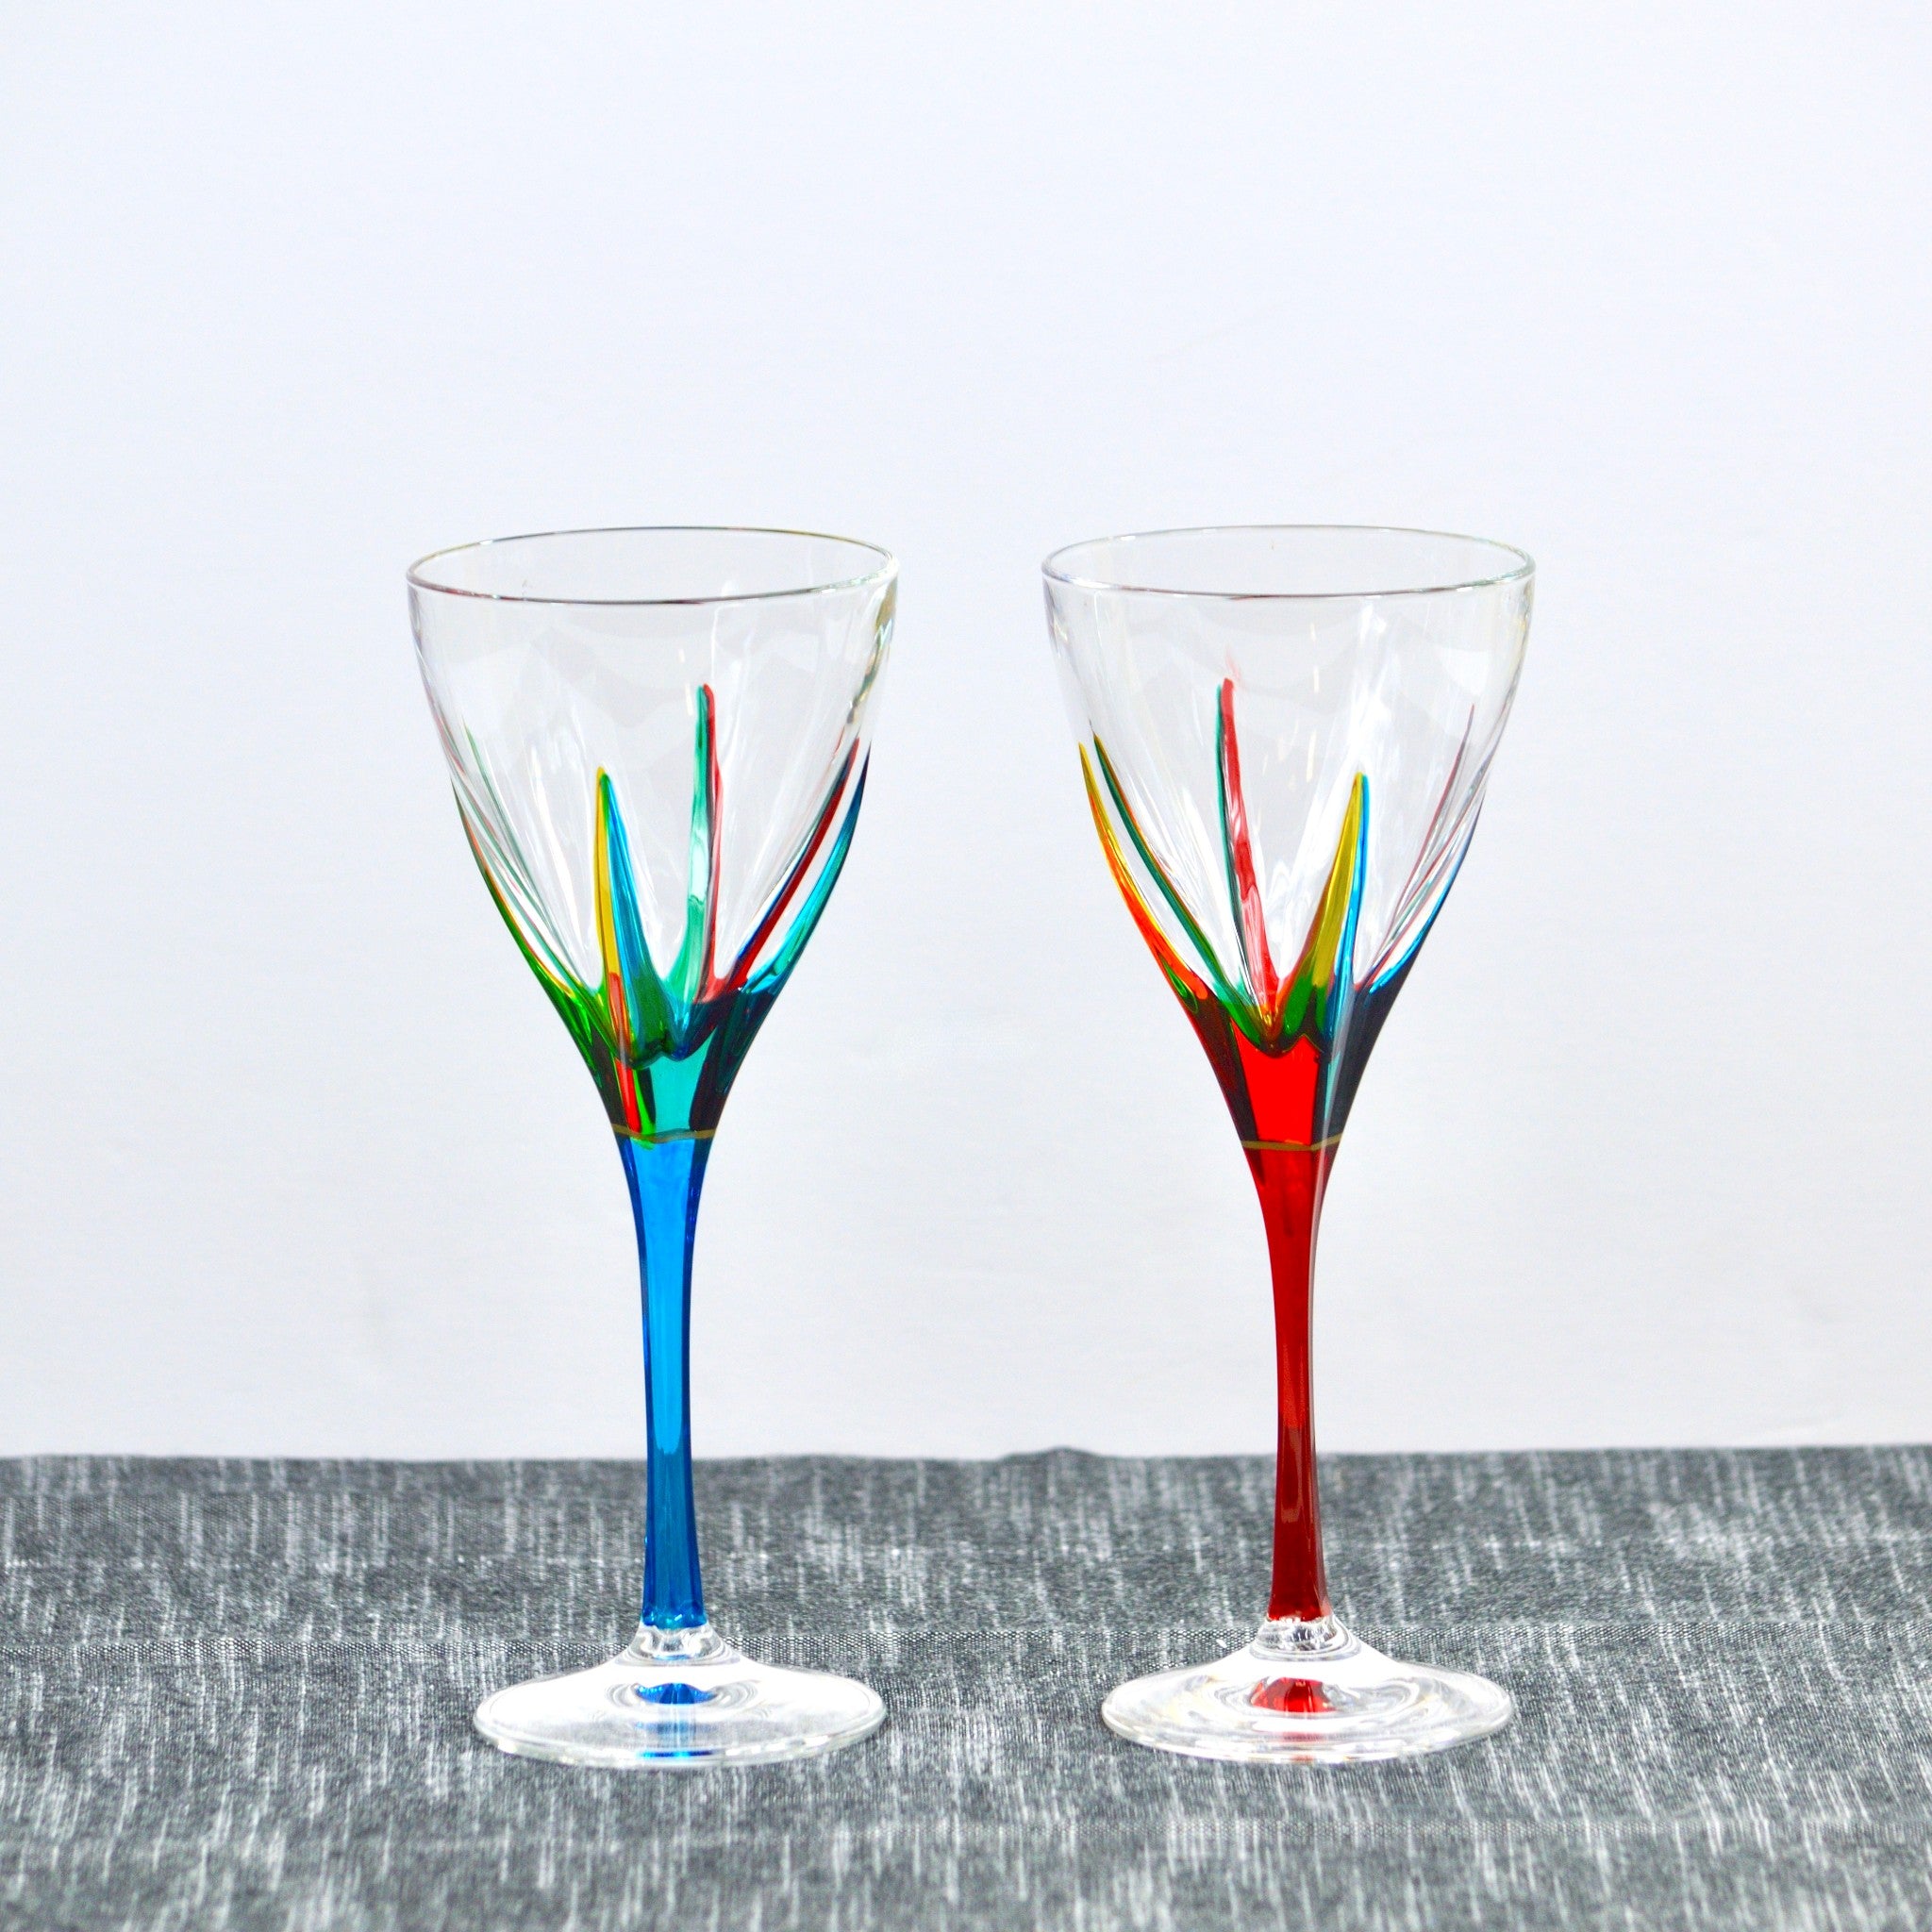 Colored Wine Glass 